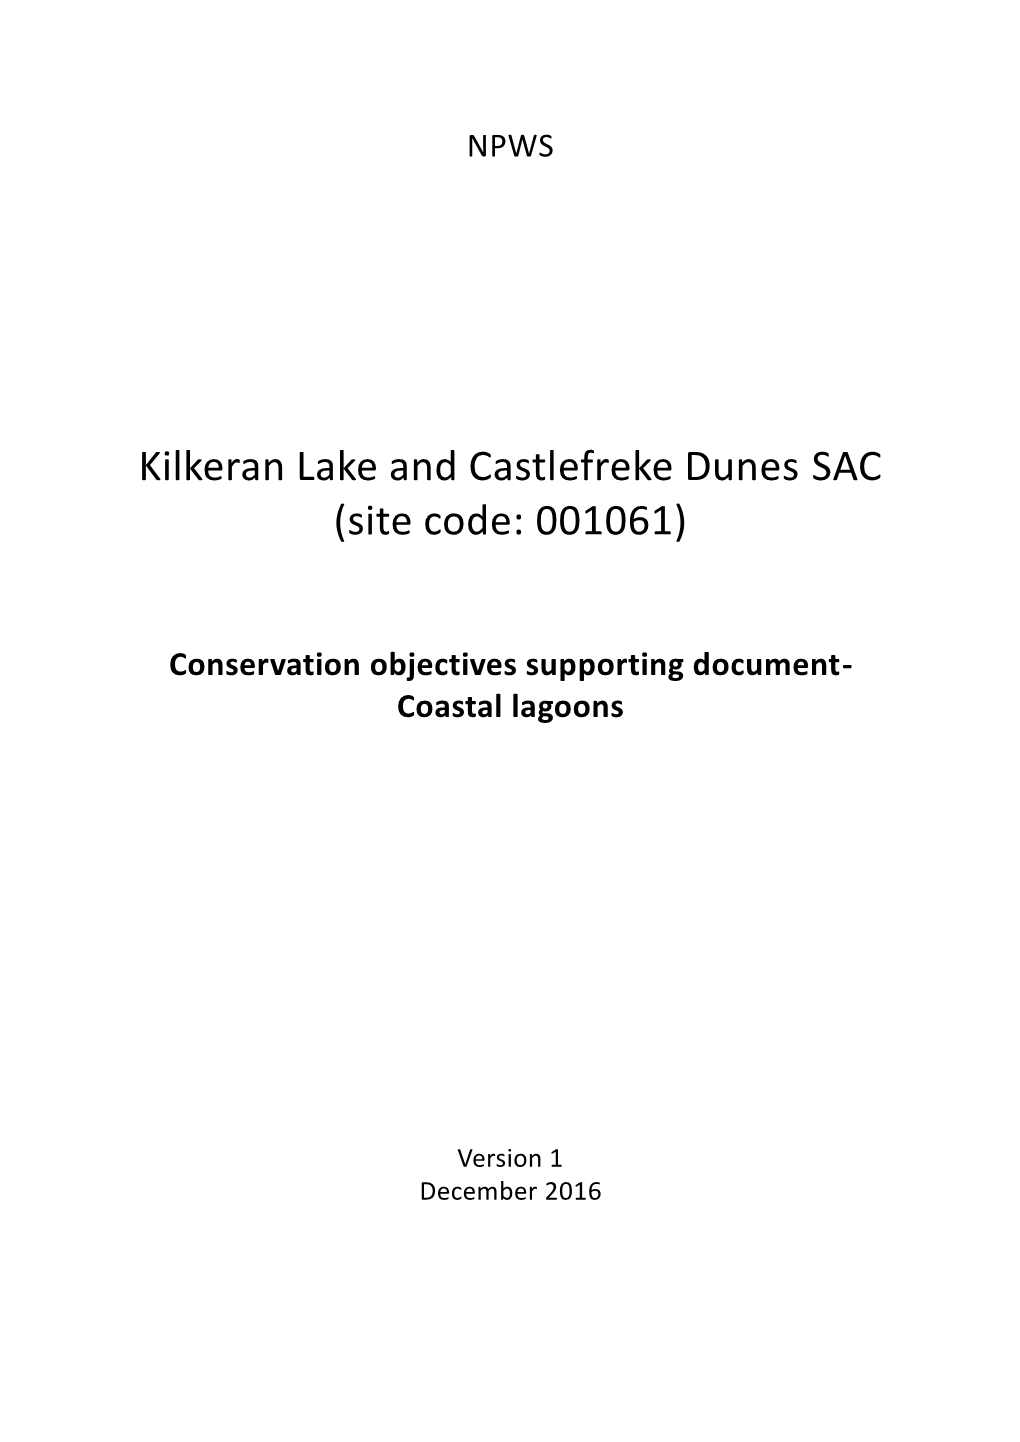 Kilkeran Lake and Castlefreke Dunes SAC (Site Code: 001061)